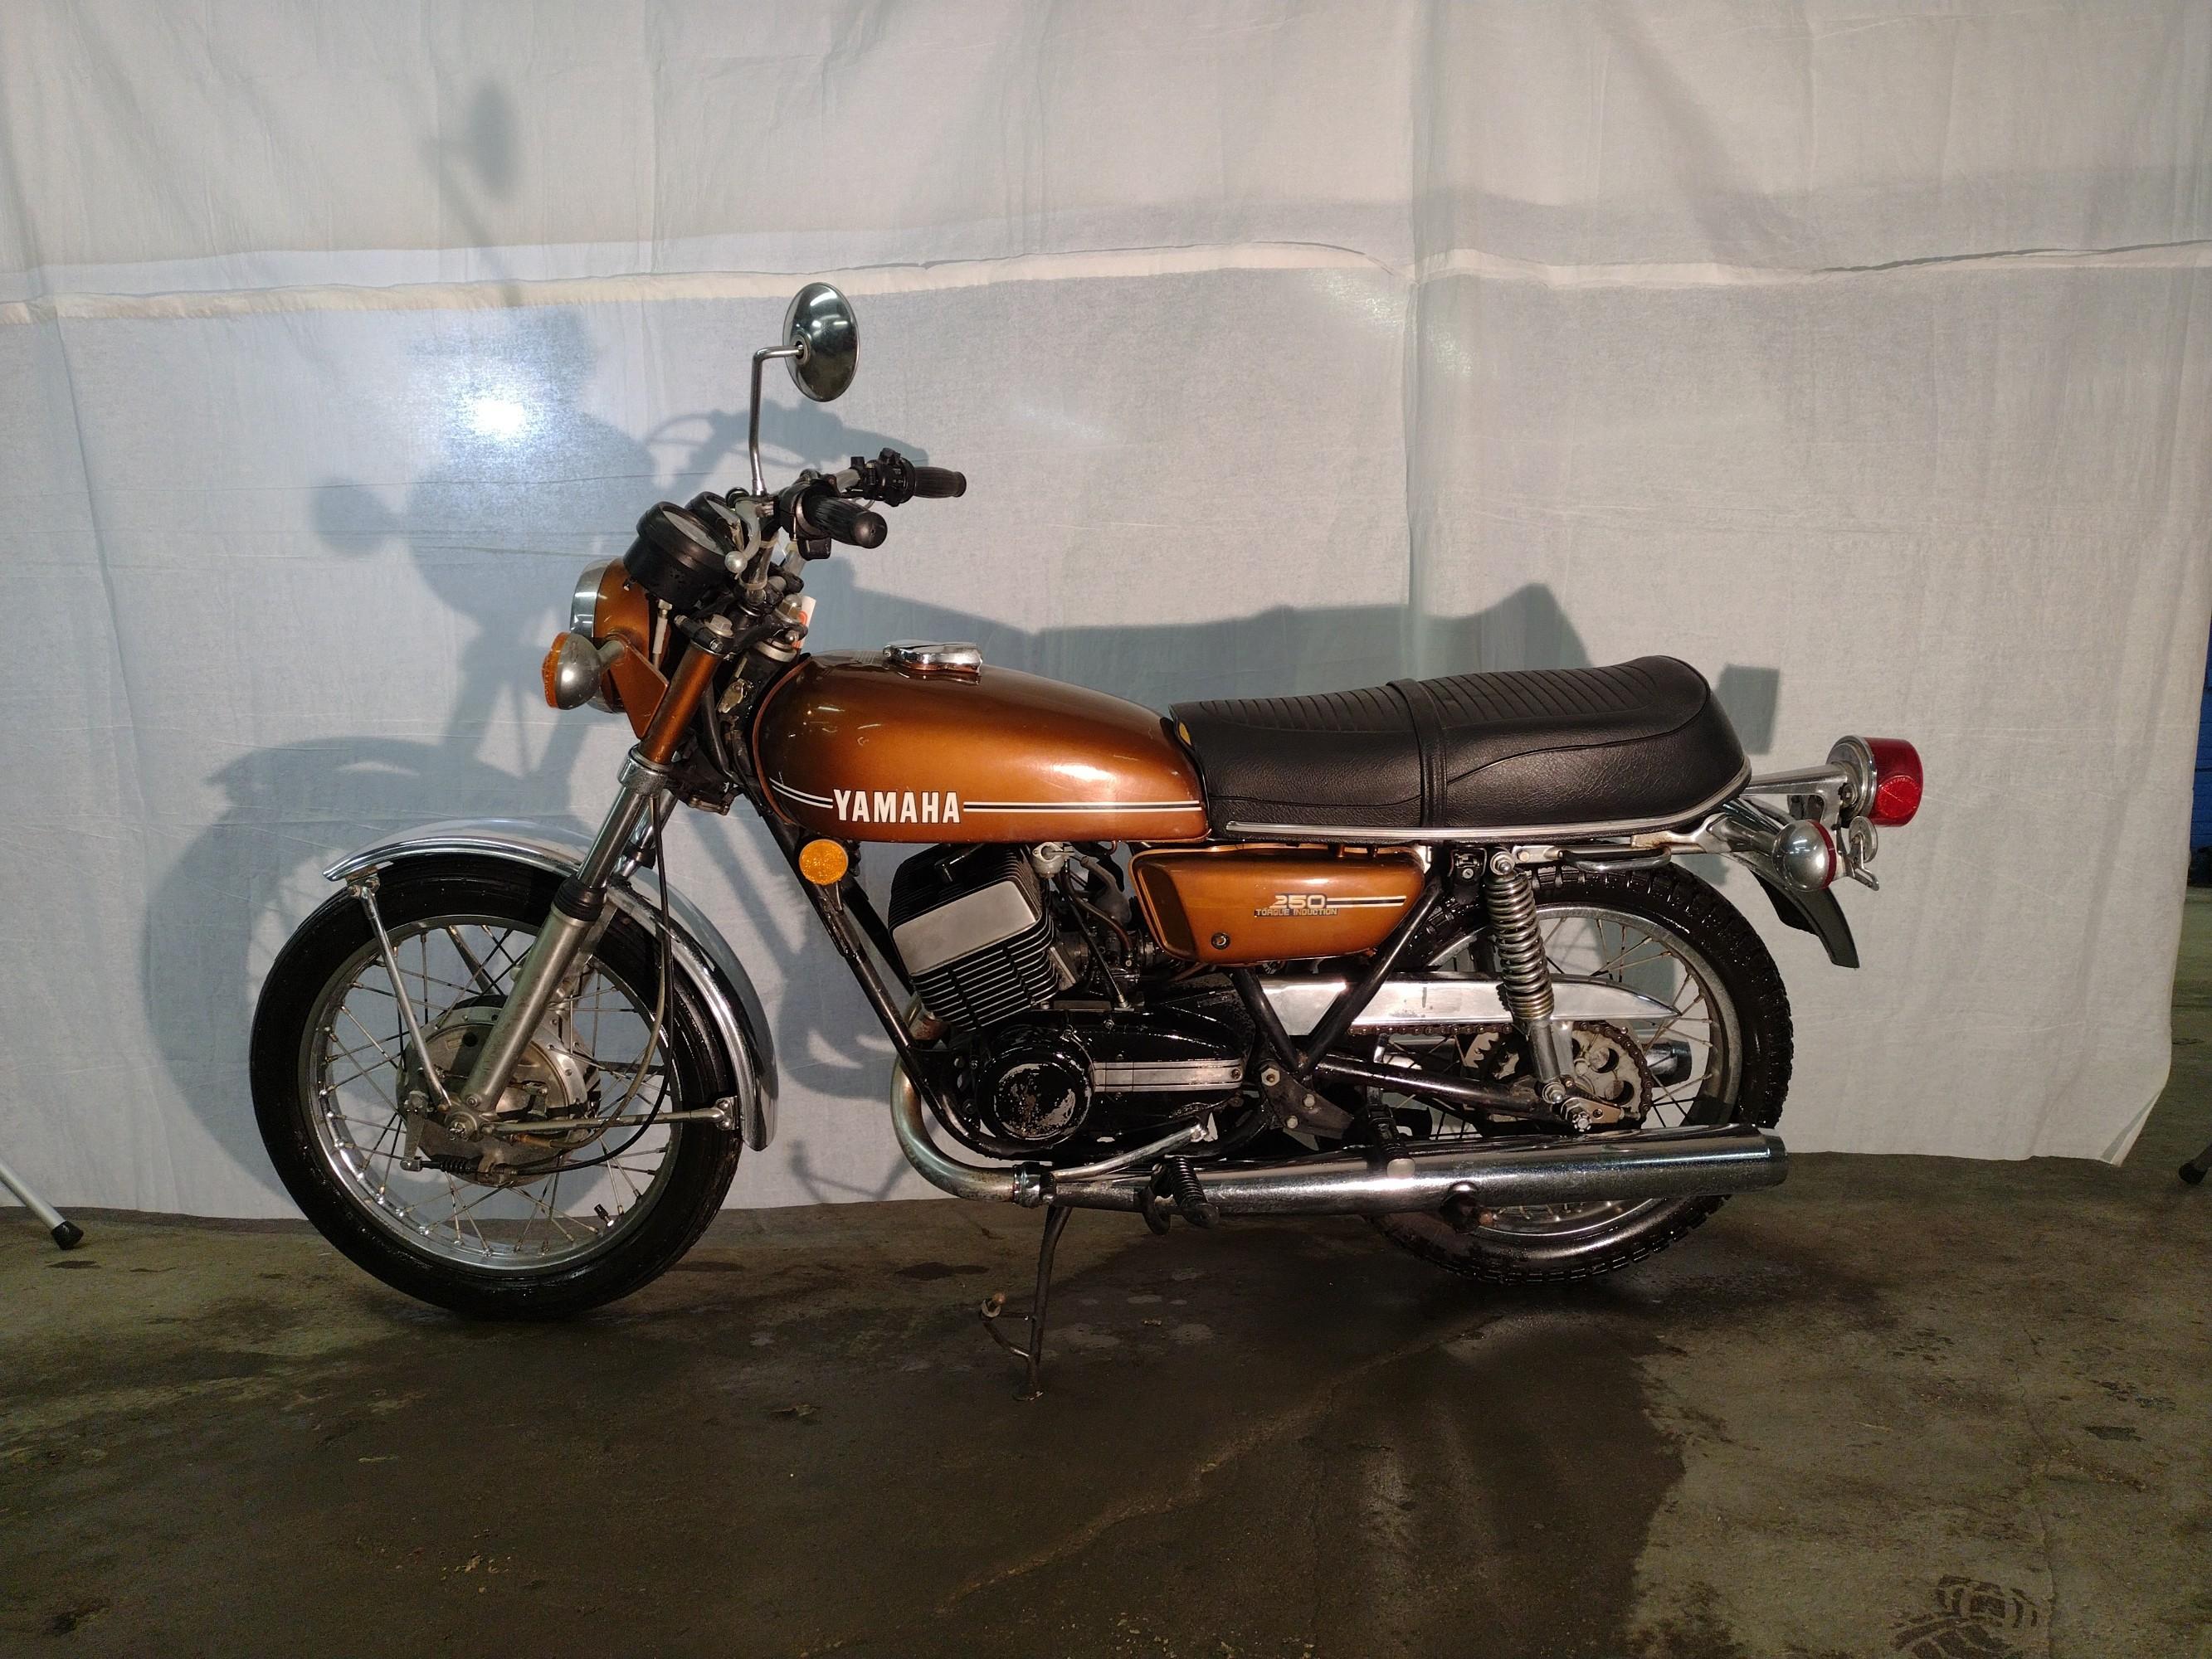 Motorcycle 1974 YAMAHA 250